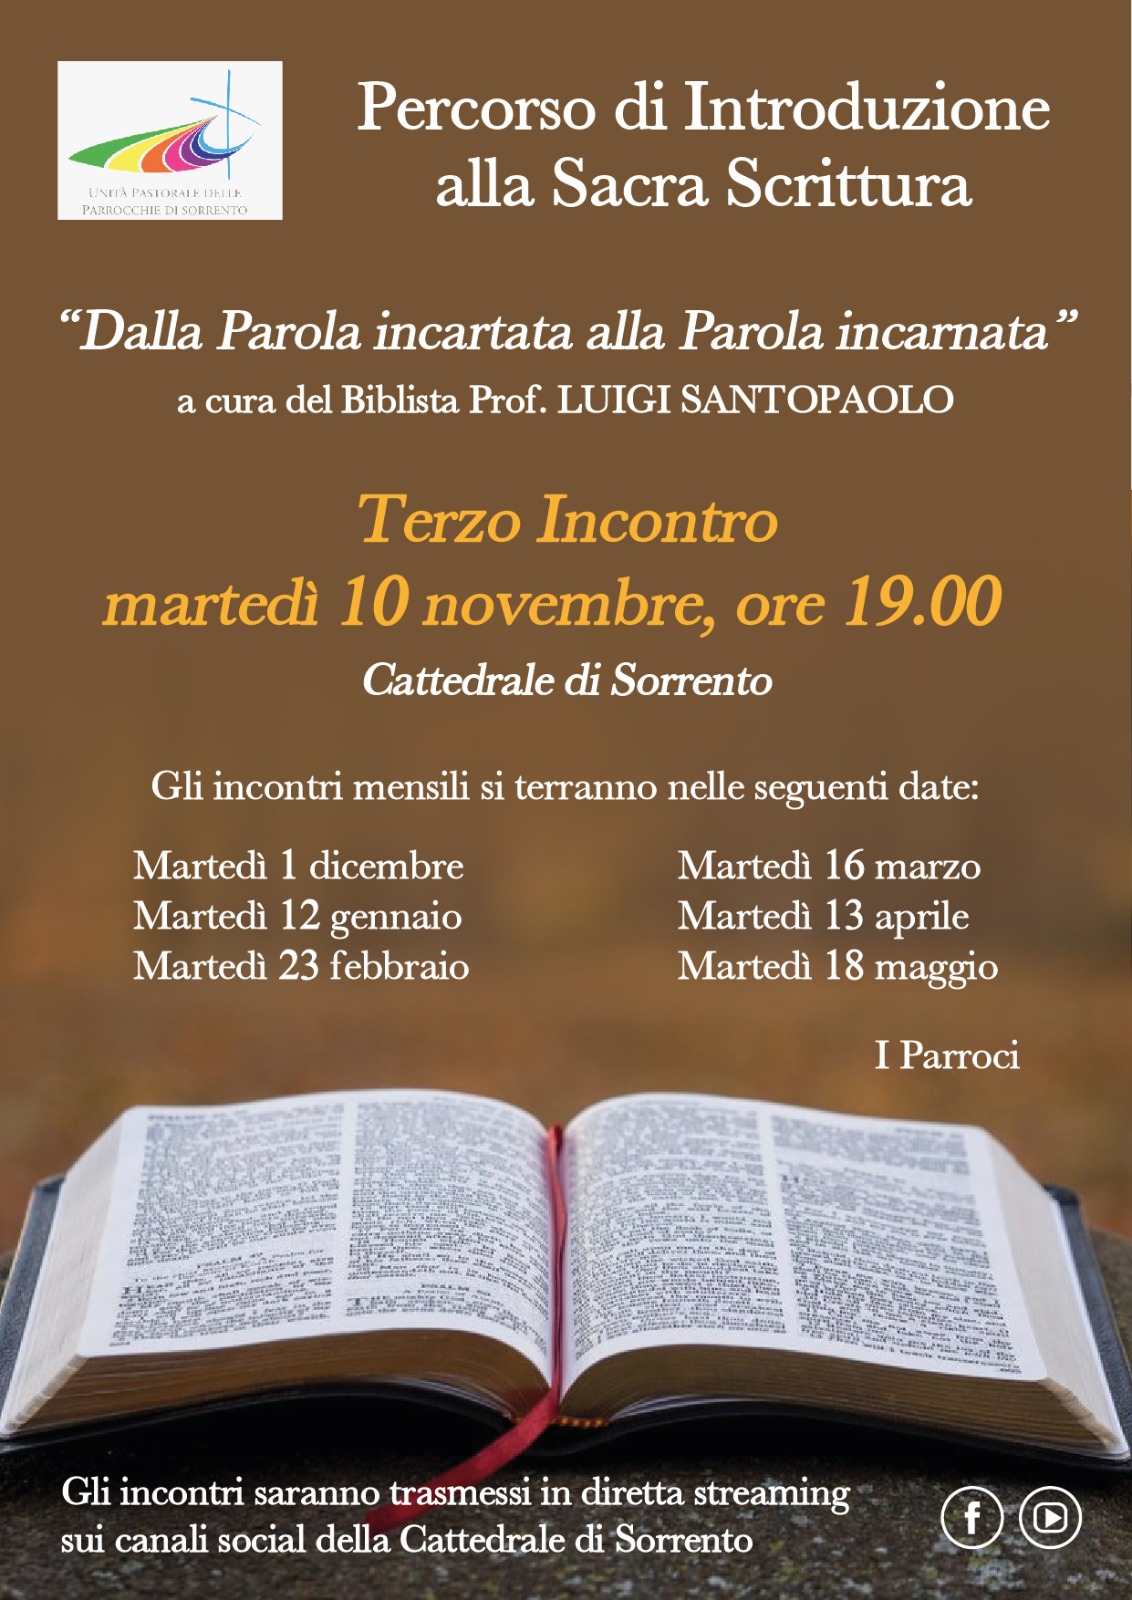 Percorso di Introduzione alla Sacra Scrittura - Arcidiocesi di Sorrento ...